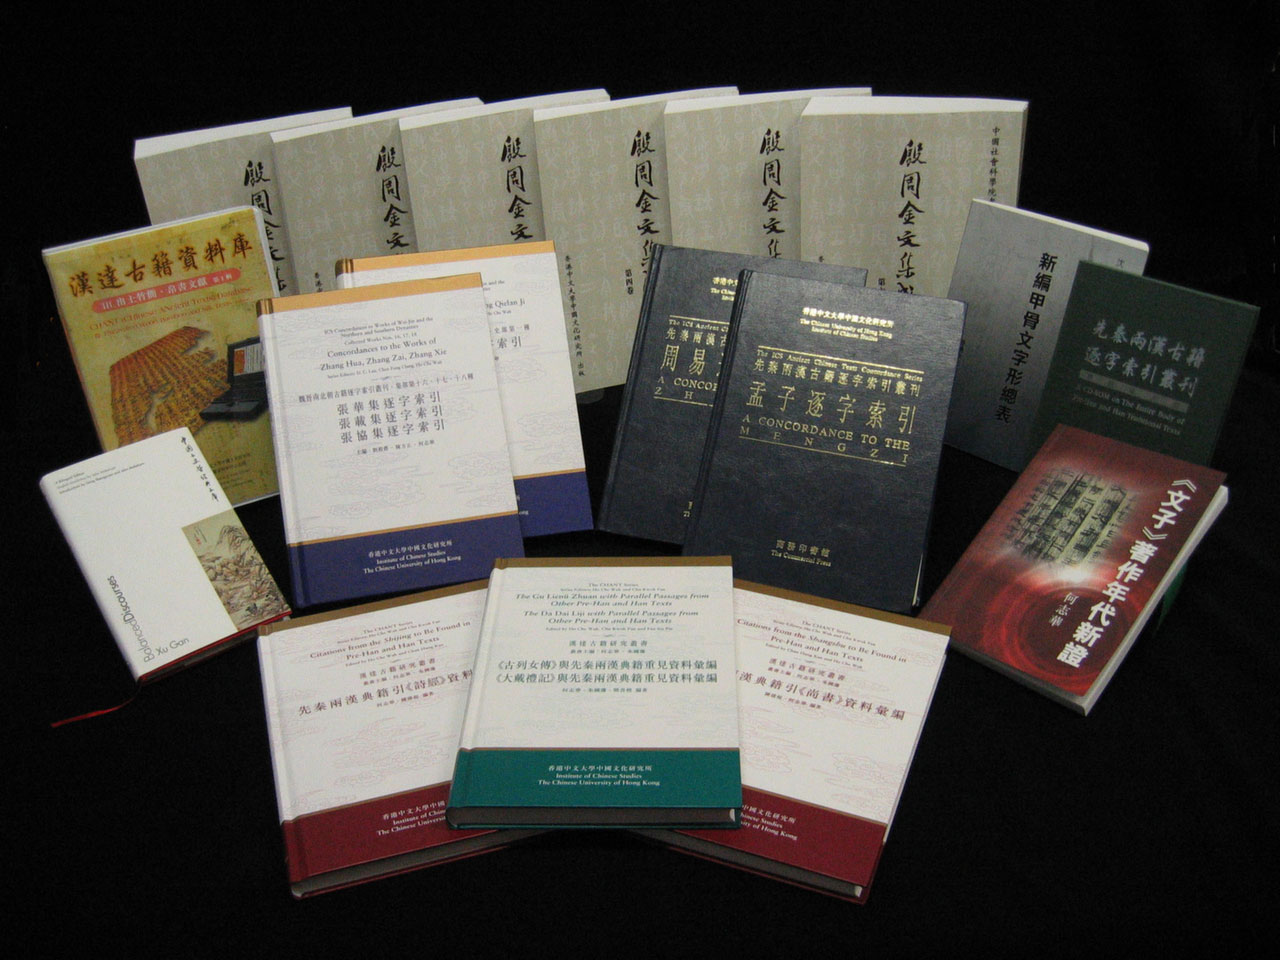 刘殿爵中国古籍研究中心旨在全面整理中国古代传世及出土文献，并建立电脑资料库，藉此进行多项研究工作，然后通过各种媒体出版研究成果。